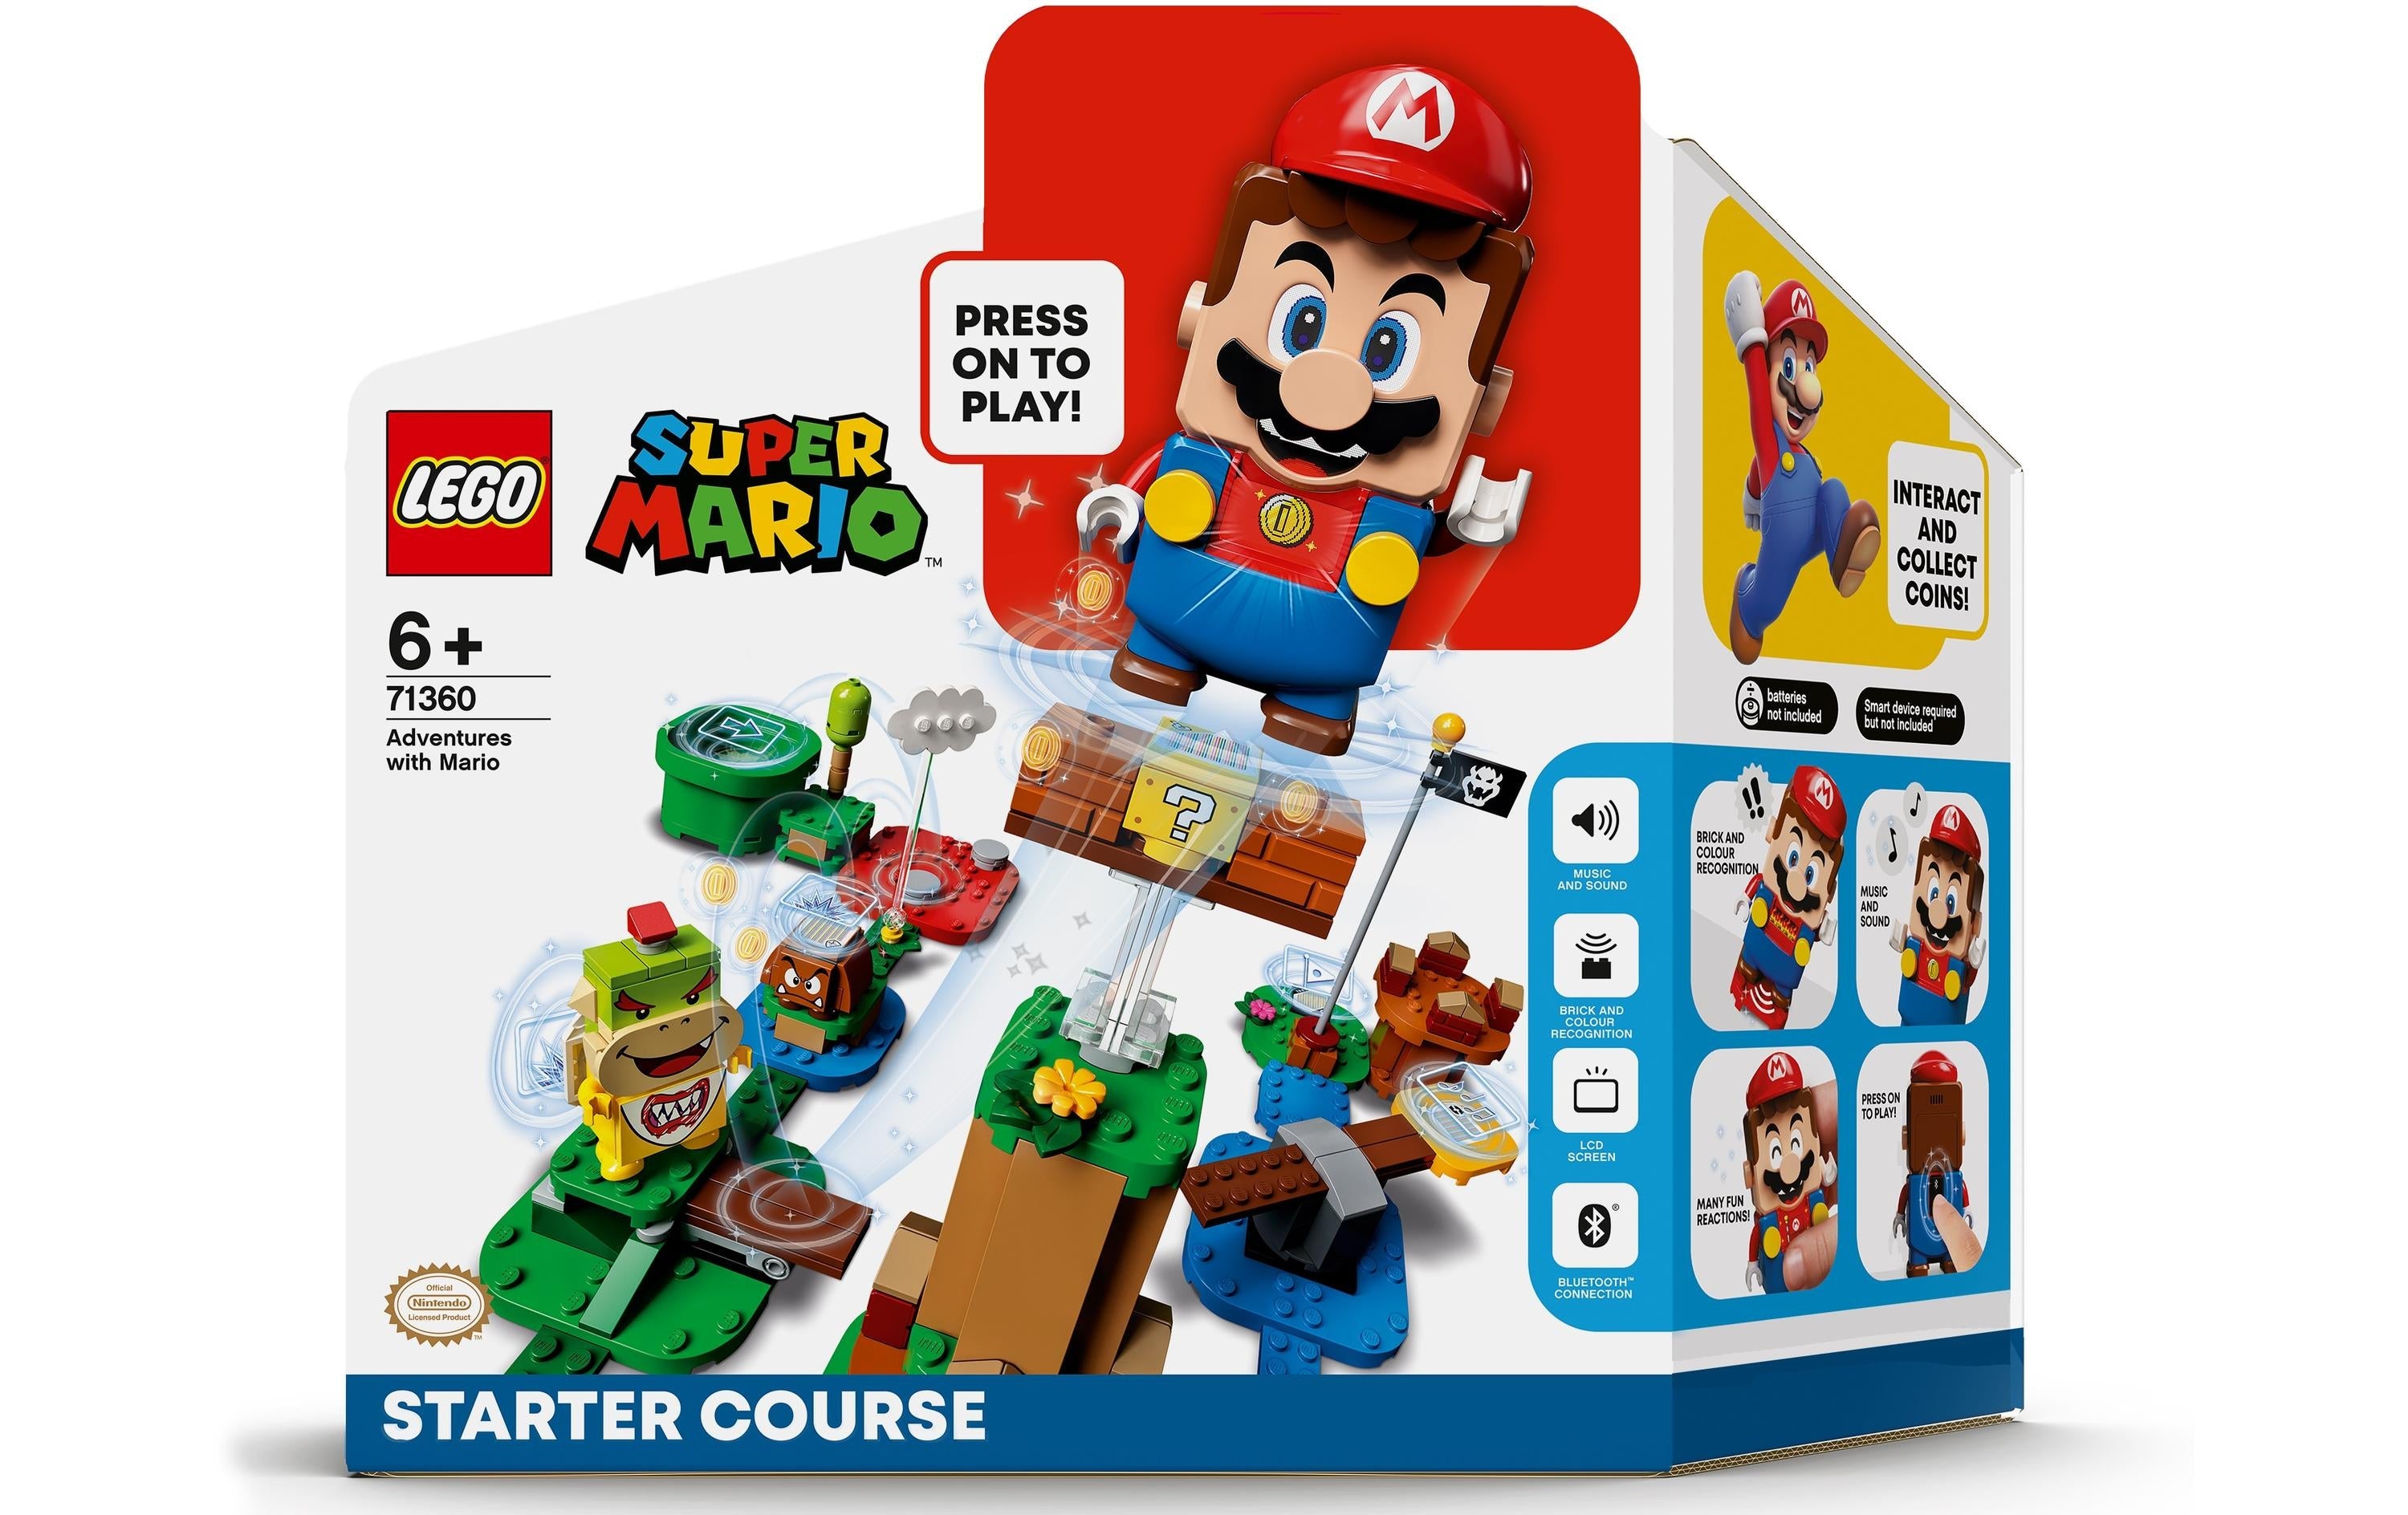 LEGO® Super Mario Abenteuer mit Mario – Starterset 71360 - im GOLDSTIEN.SHOP verfügbar mit Gratisversand ab Schweizer Lager! (5702016618396)